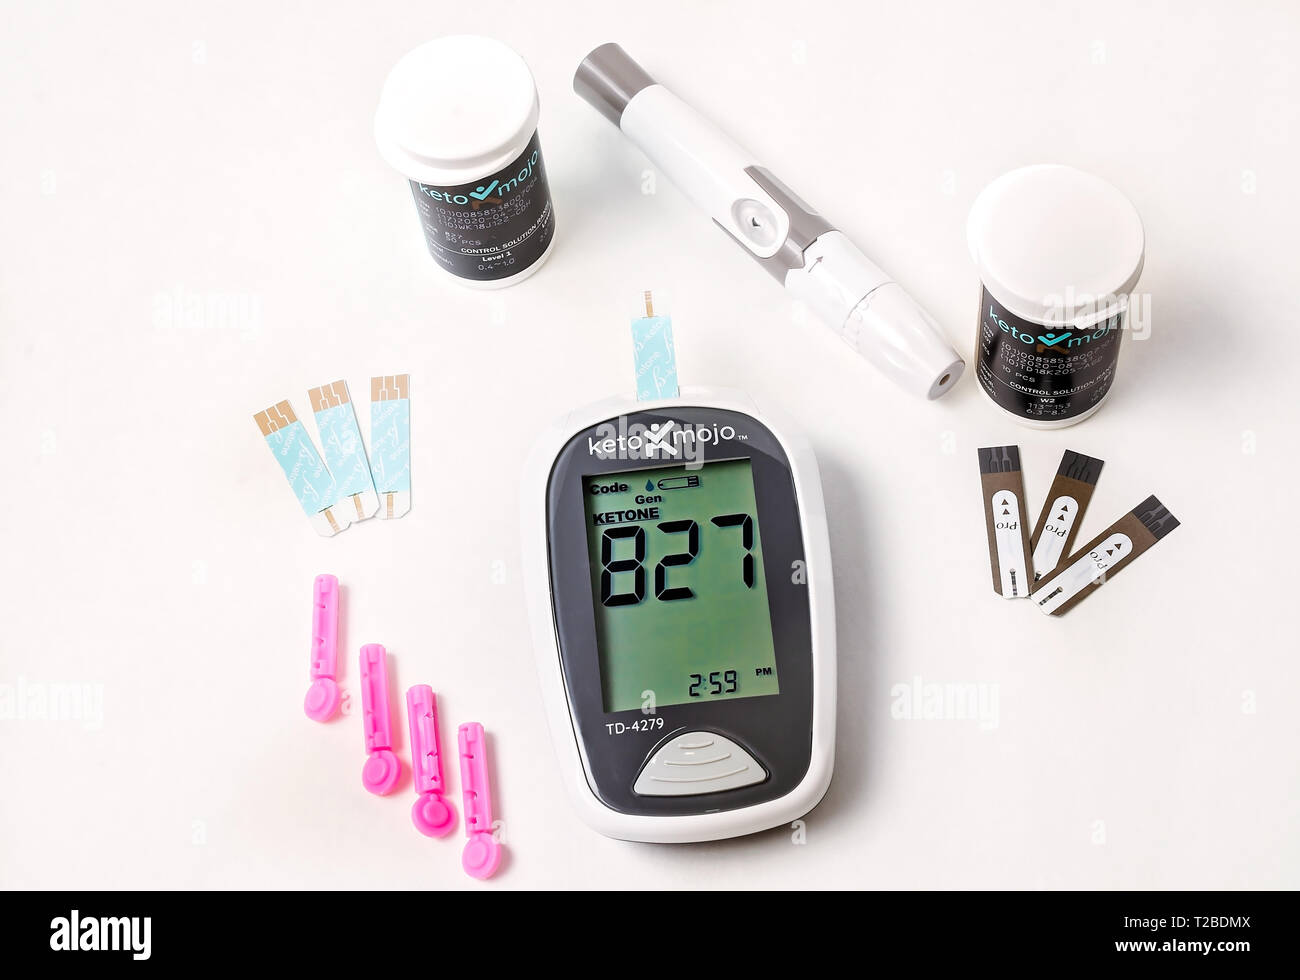 Un Keto-Mojo cetona y medidor de glucosa en sangre es la foto en blanco,  junto con las tiras de prueba de glucosa y cetonas, las agujas desechables  y lancet dispositivo Fotografía de